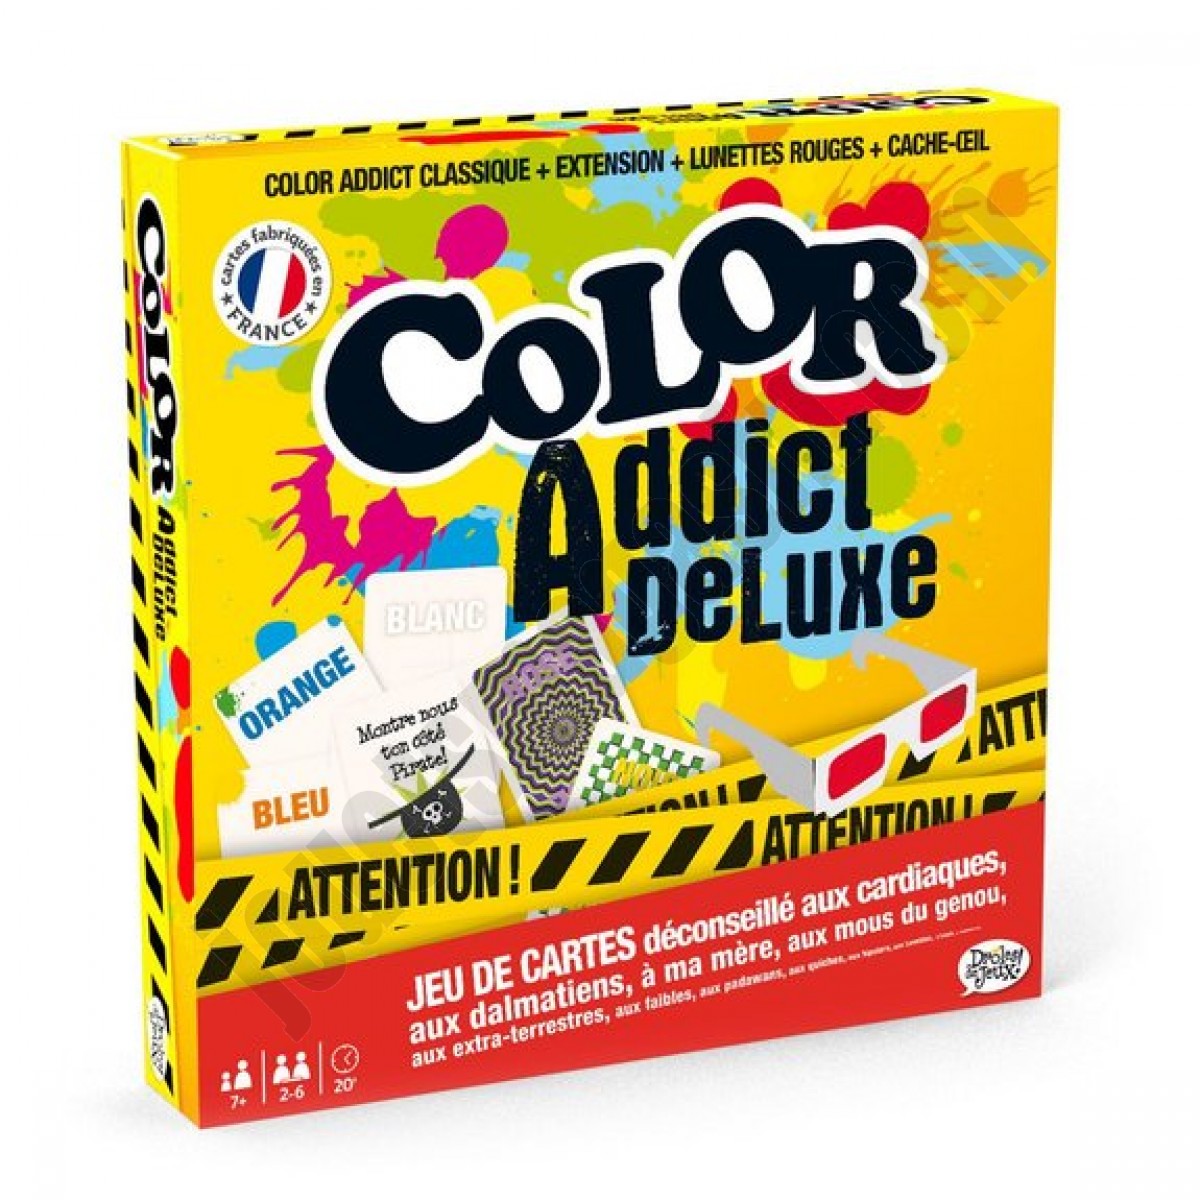 Color Addict Deluxe ◆◆◆ Nouveau - Color Addict Deluxe ◆◆◆ Nouveau